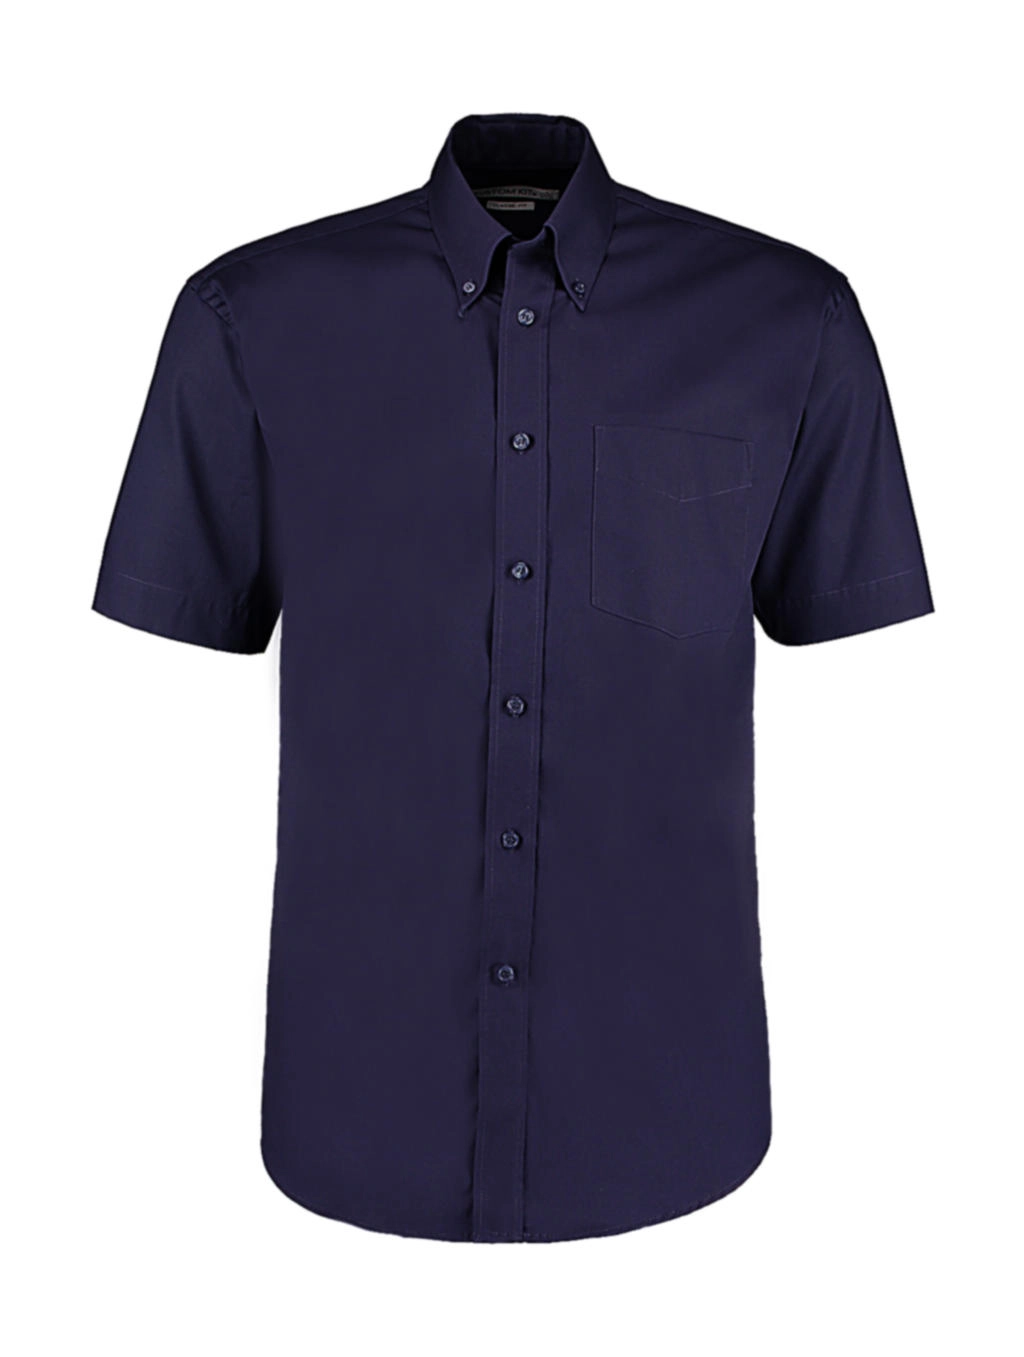 Classic Fit Premium Oxford Shirt SSL zum Besticken und Bedrucken in der Farbe Midnight Navy mit Ihren Logo, Schriftzug oder Motiv.